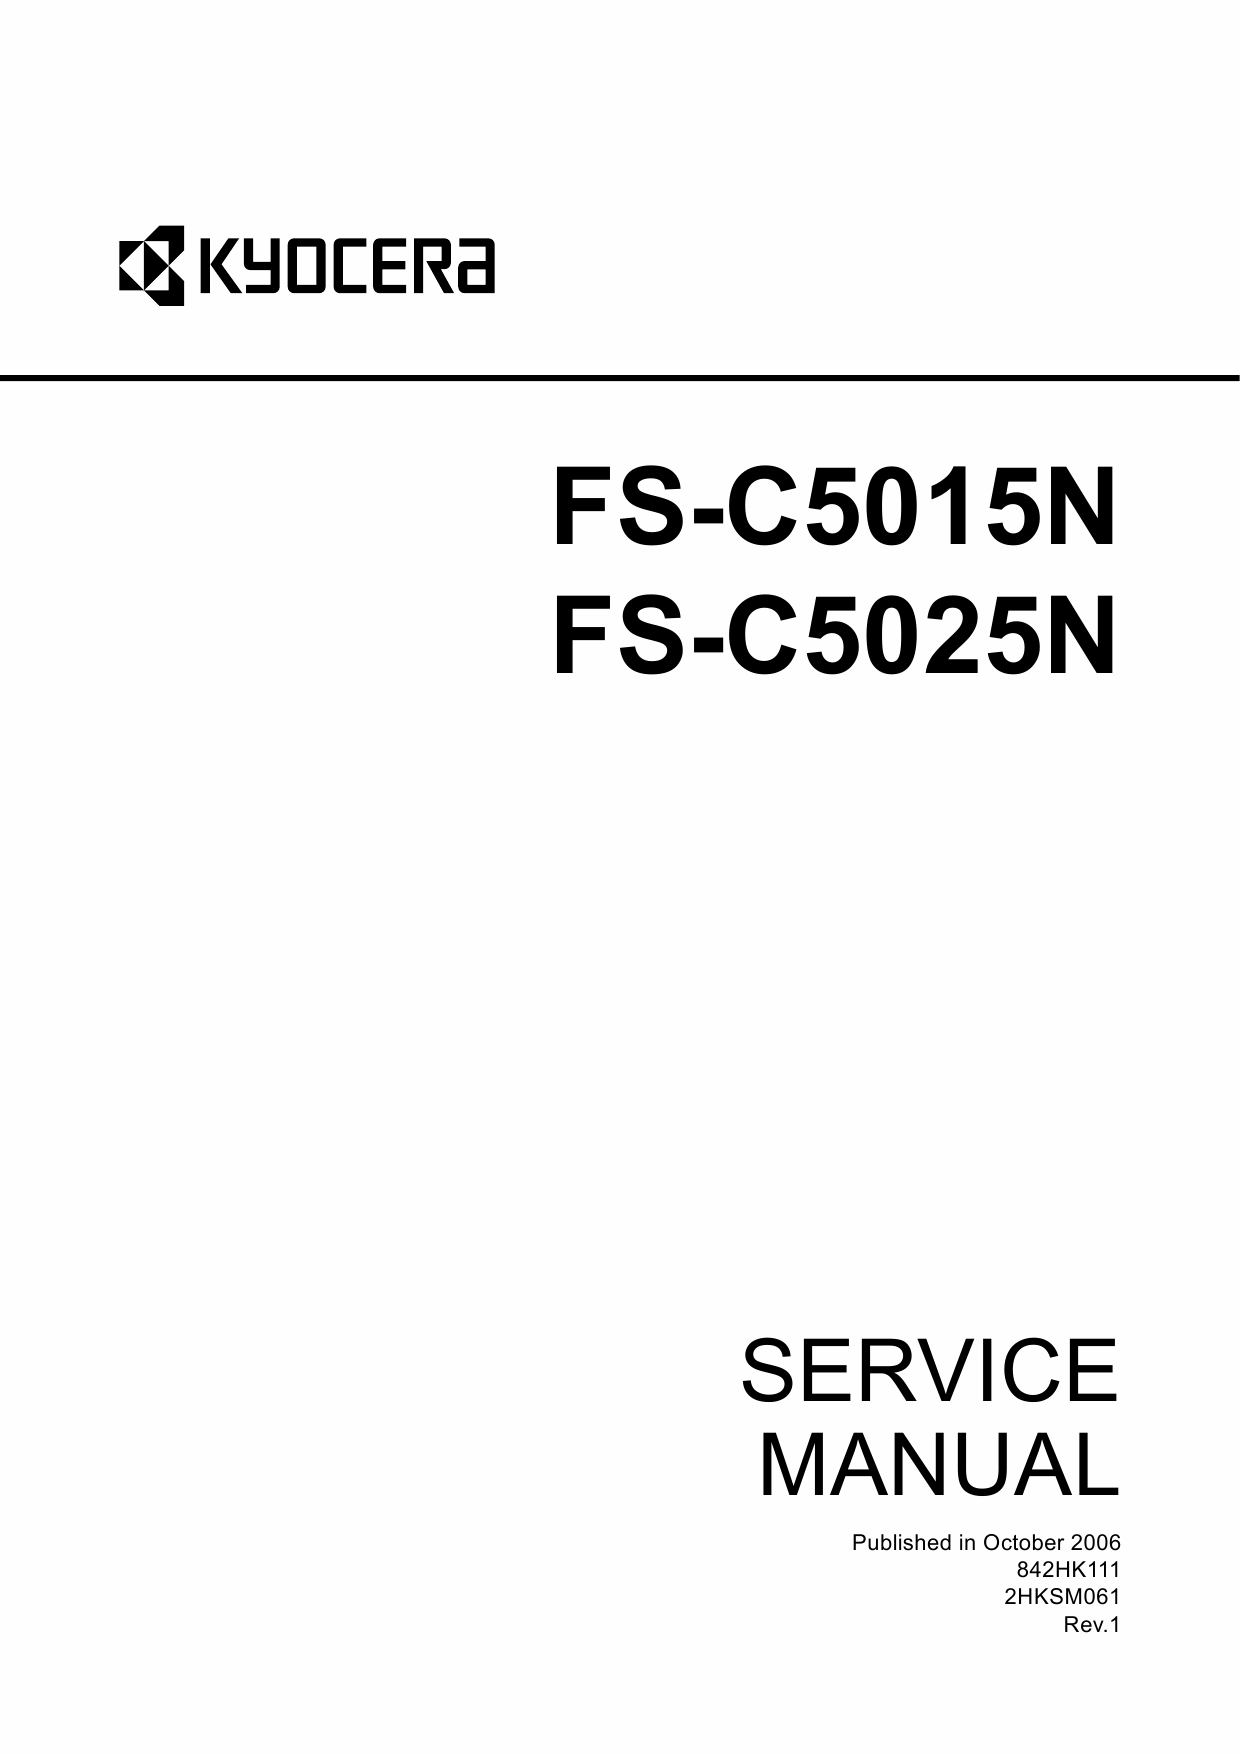 KYOCERA ColorLaserPrinter FS-C5015N C5025N Parts and Service Manual-1